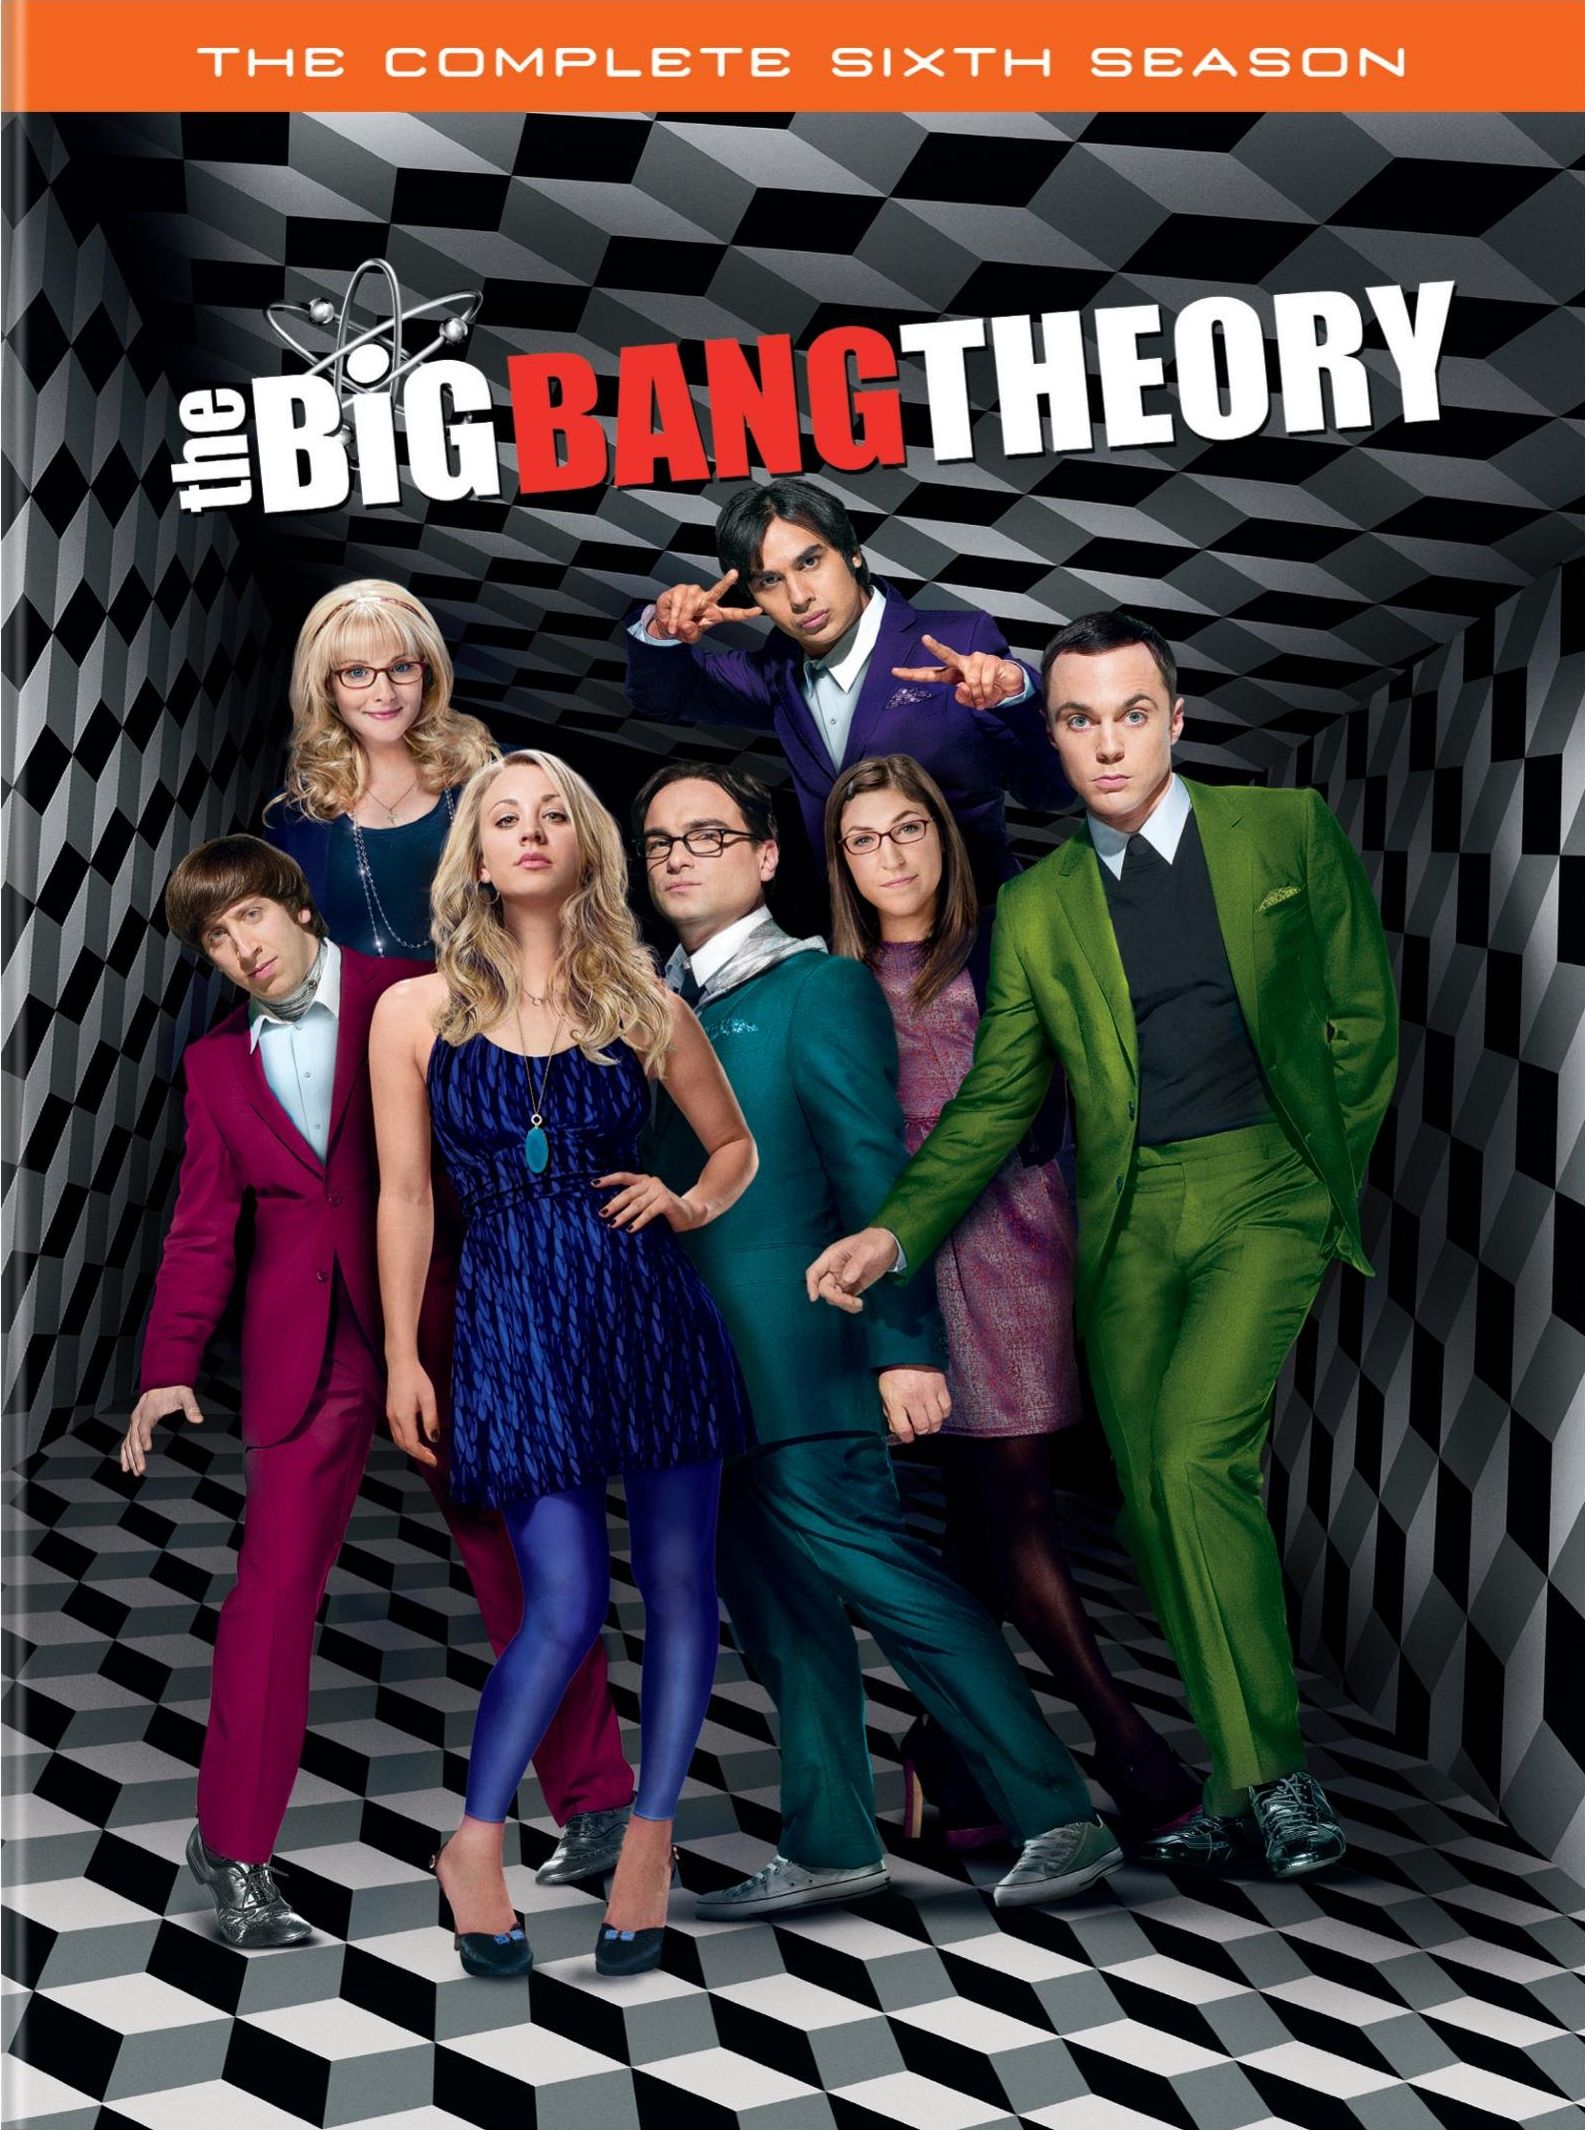 2013 Big Bang Theory season 5 base set 1-68 